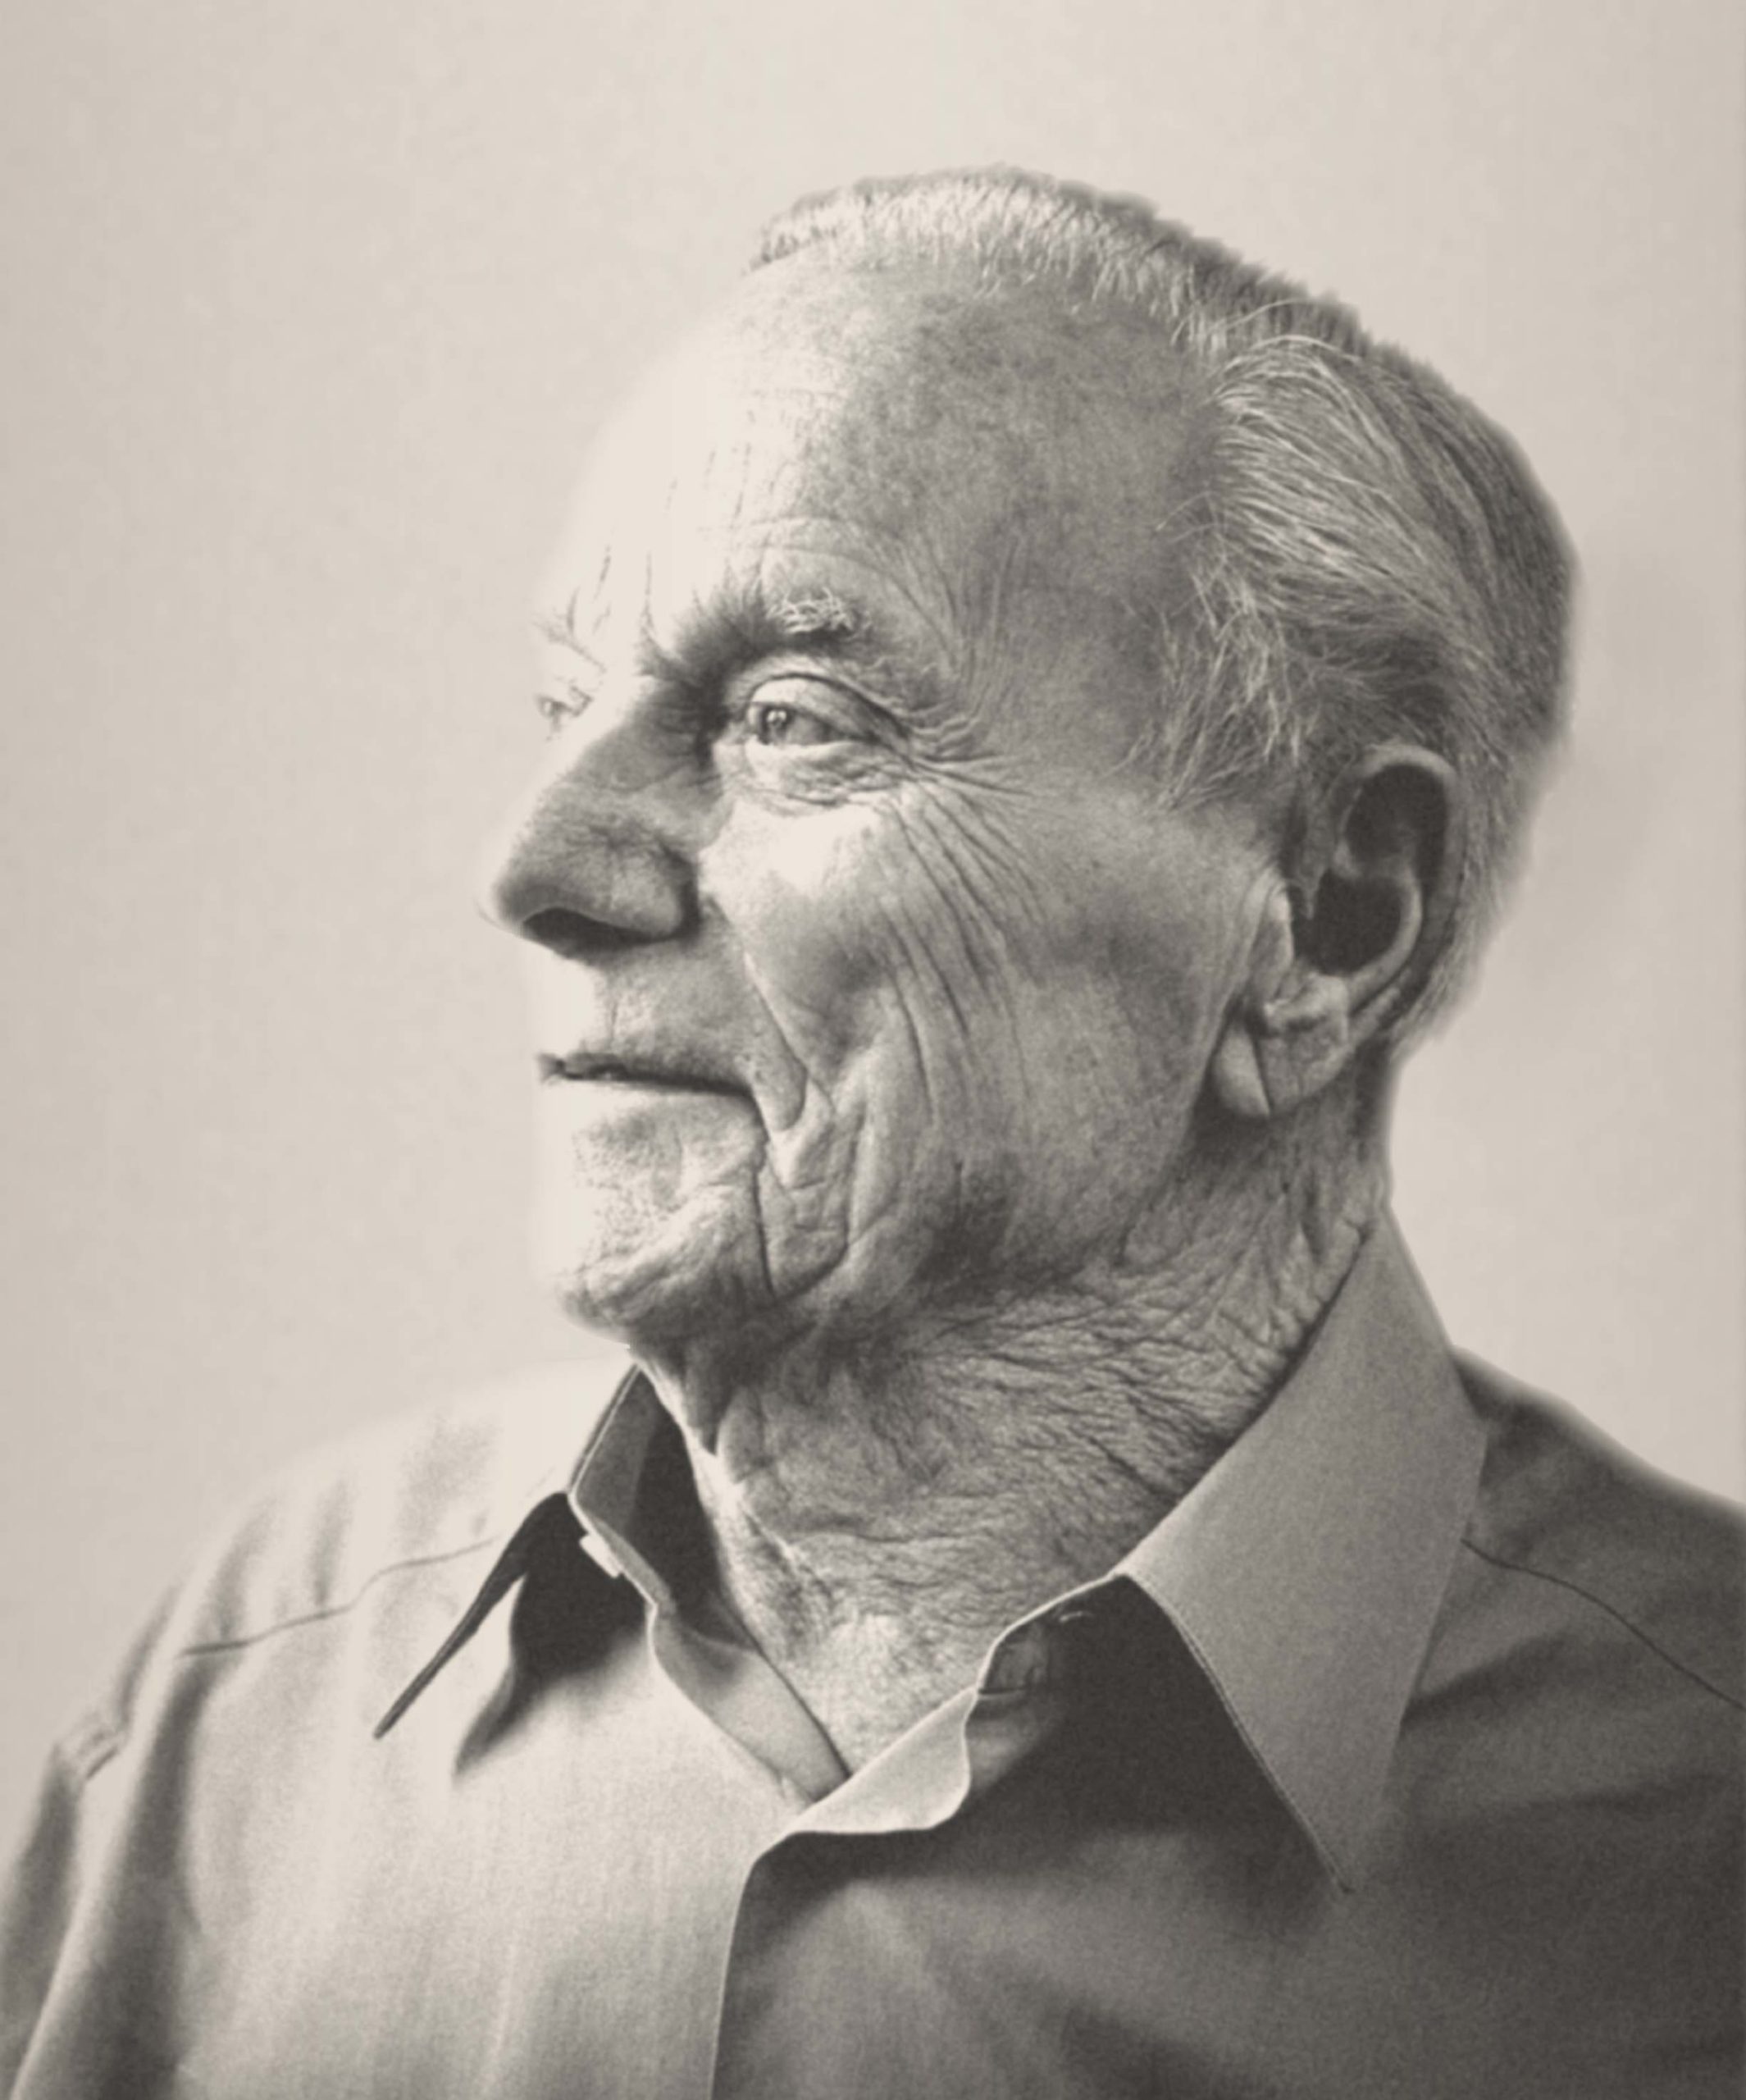 Portrait of Peter Mondavi in Black and White